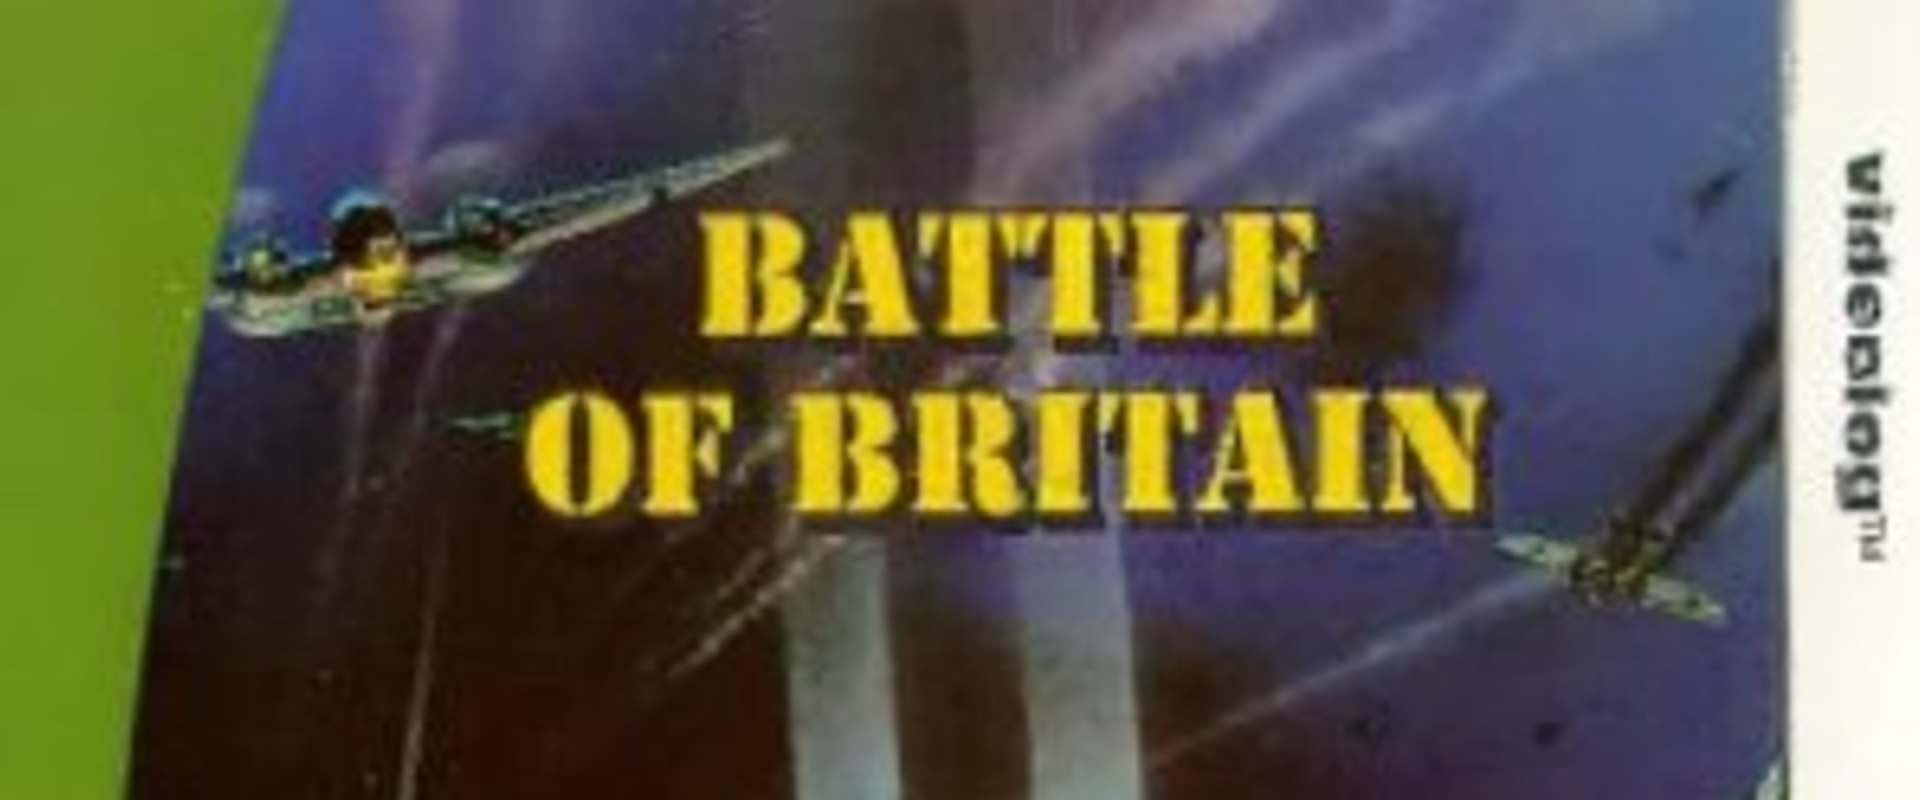 Battle of Britain background 2